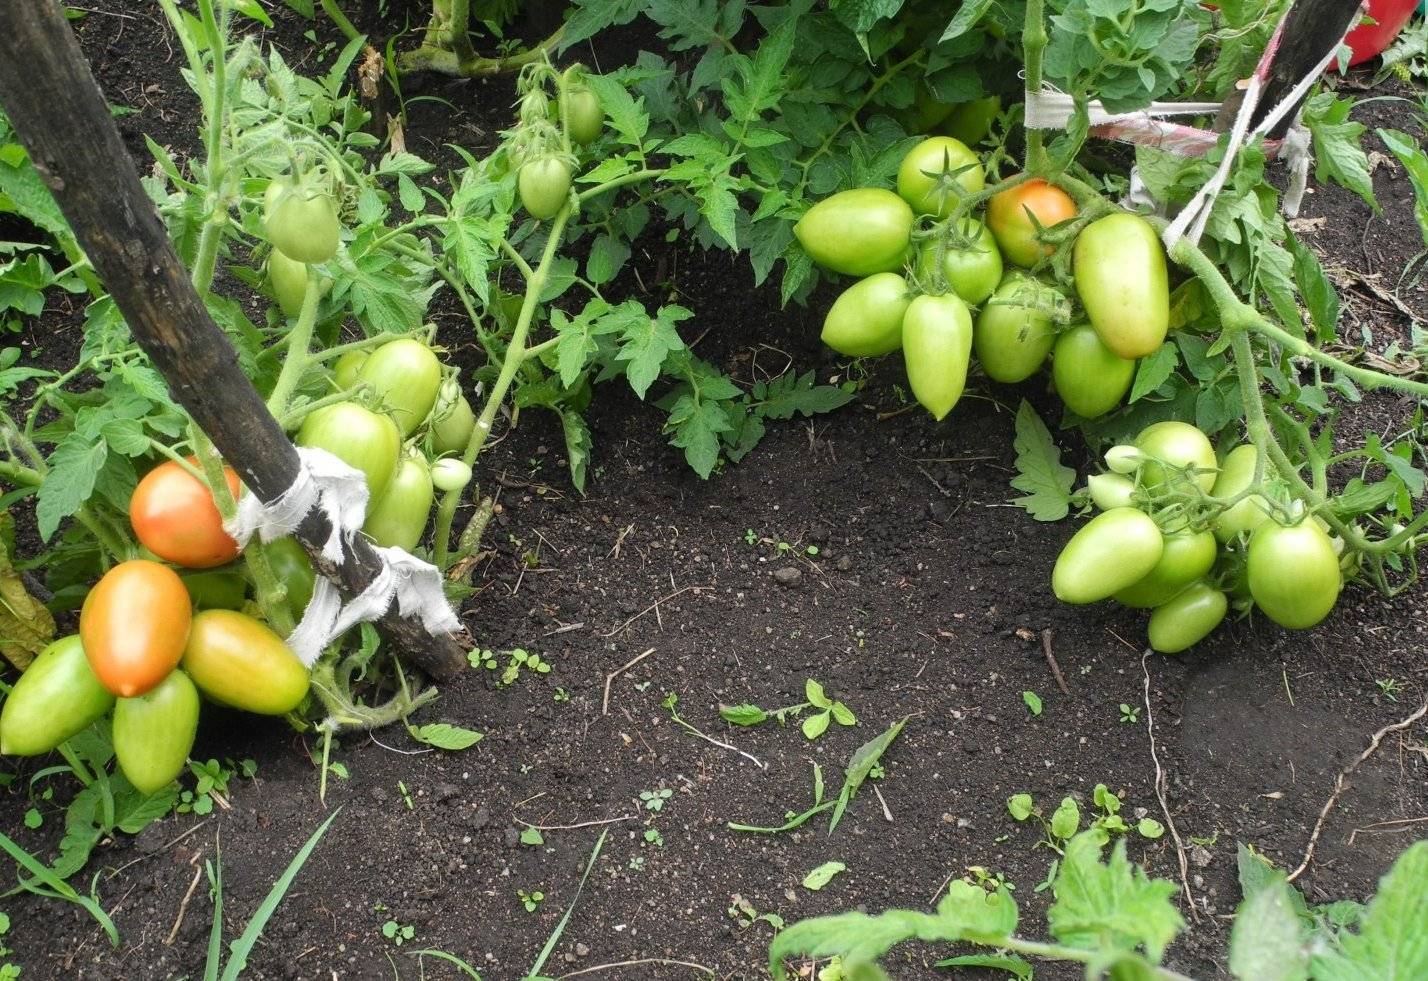 Описание сорта томата сибирская тройка — как повысить урожайность